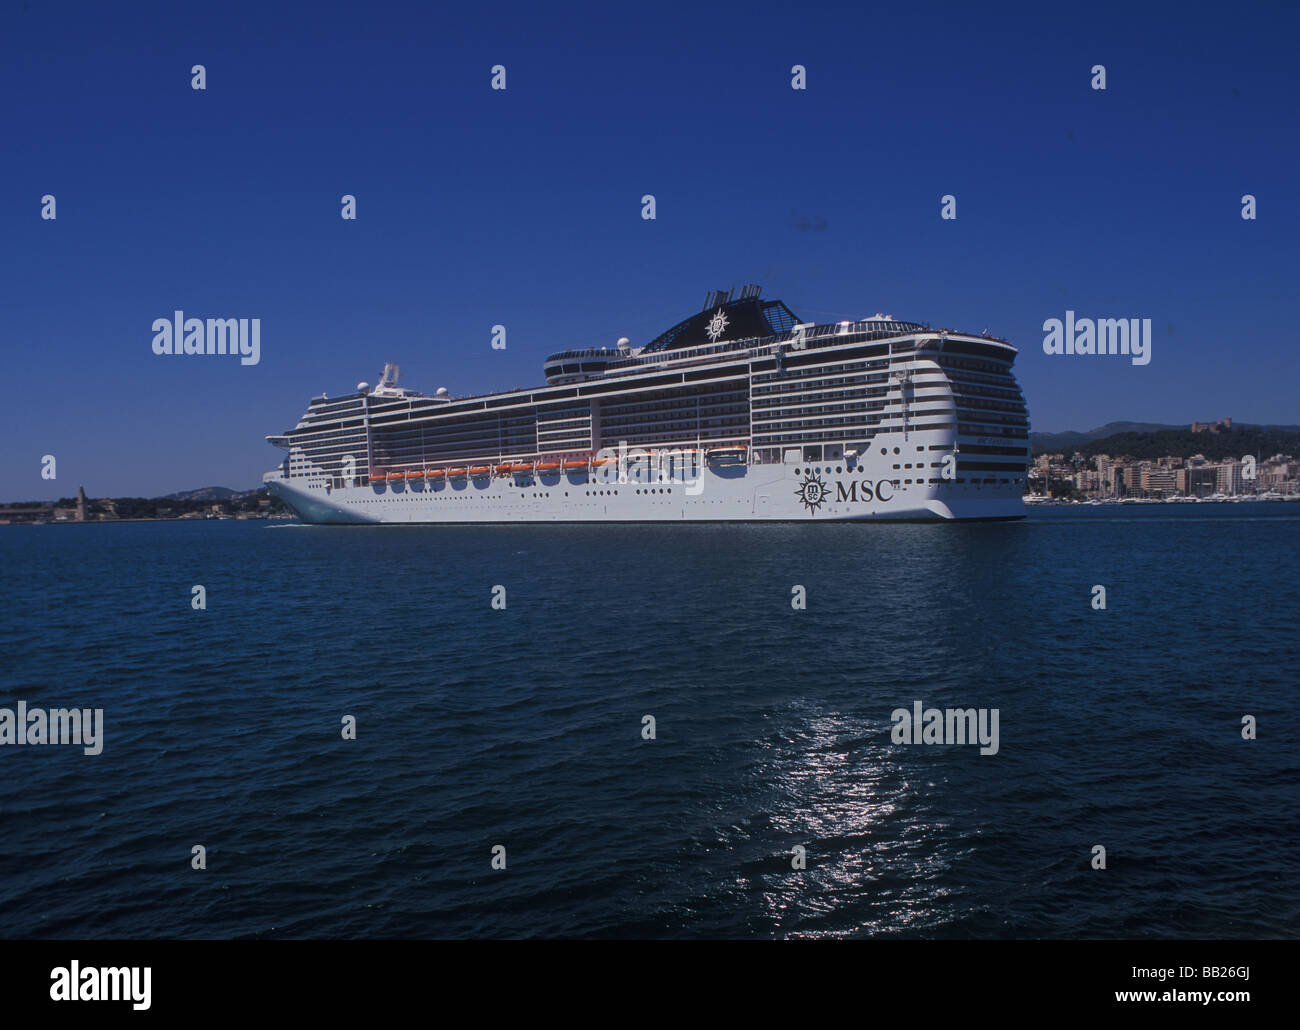 MSC nave da crociera "Fantasia" entrando nel porto di Palma de Mallorca Foto Stock